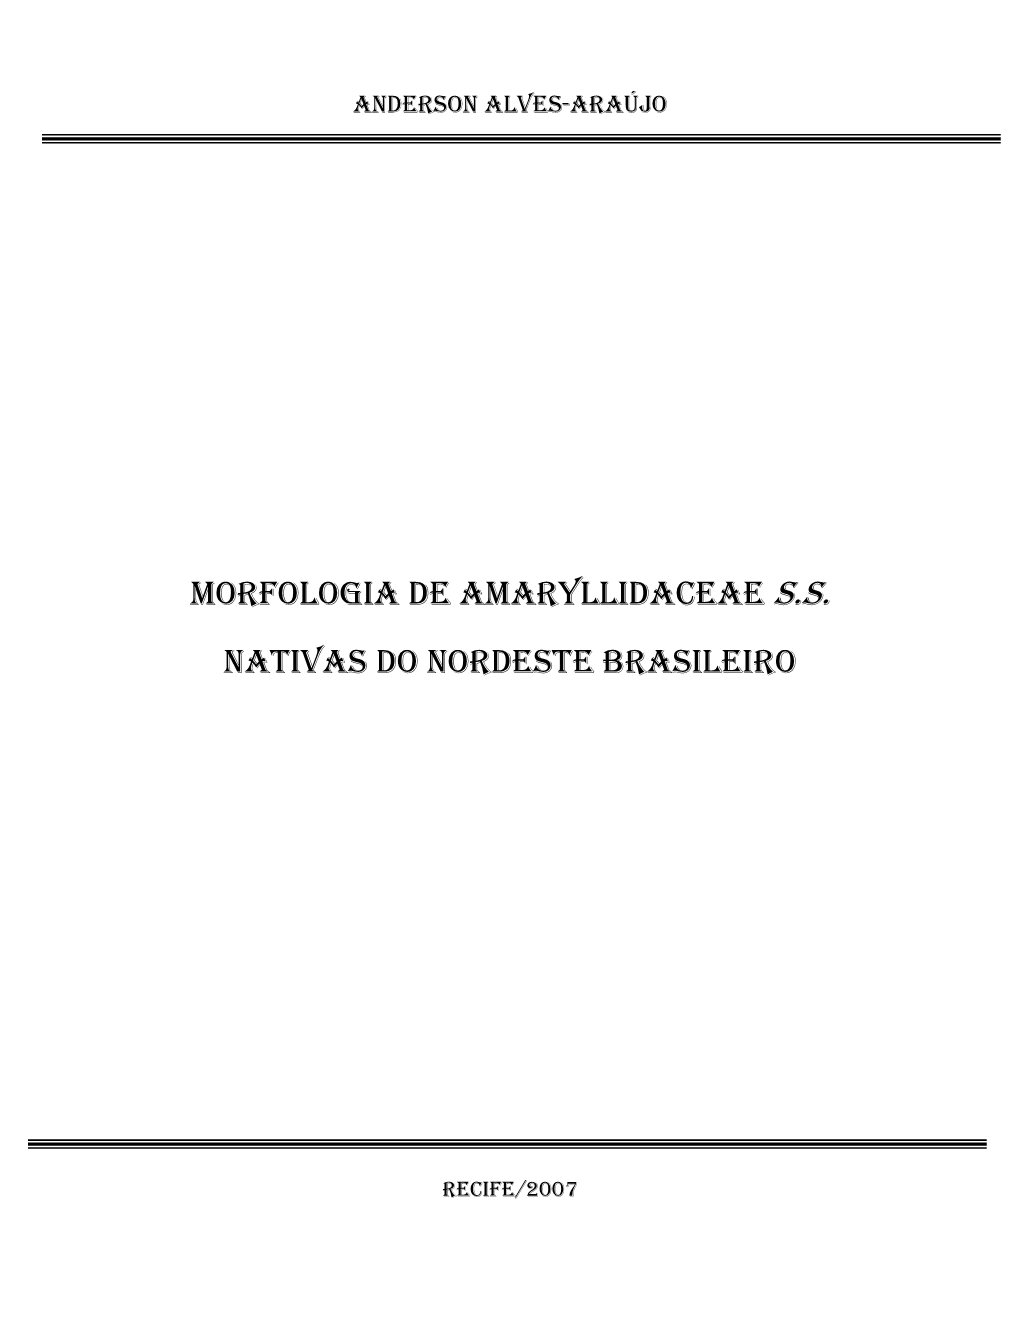 Morfologia De Amaryllidaceae S.S. Nativas Do Nordeste Brasileiro